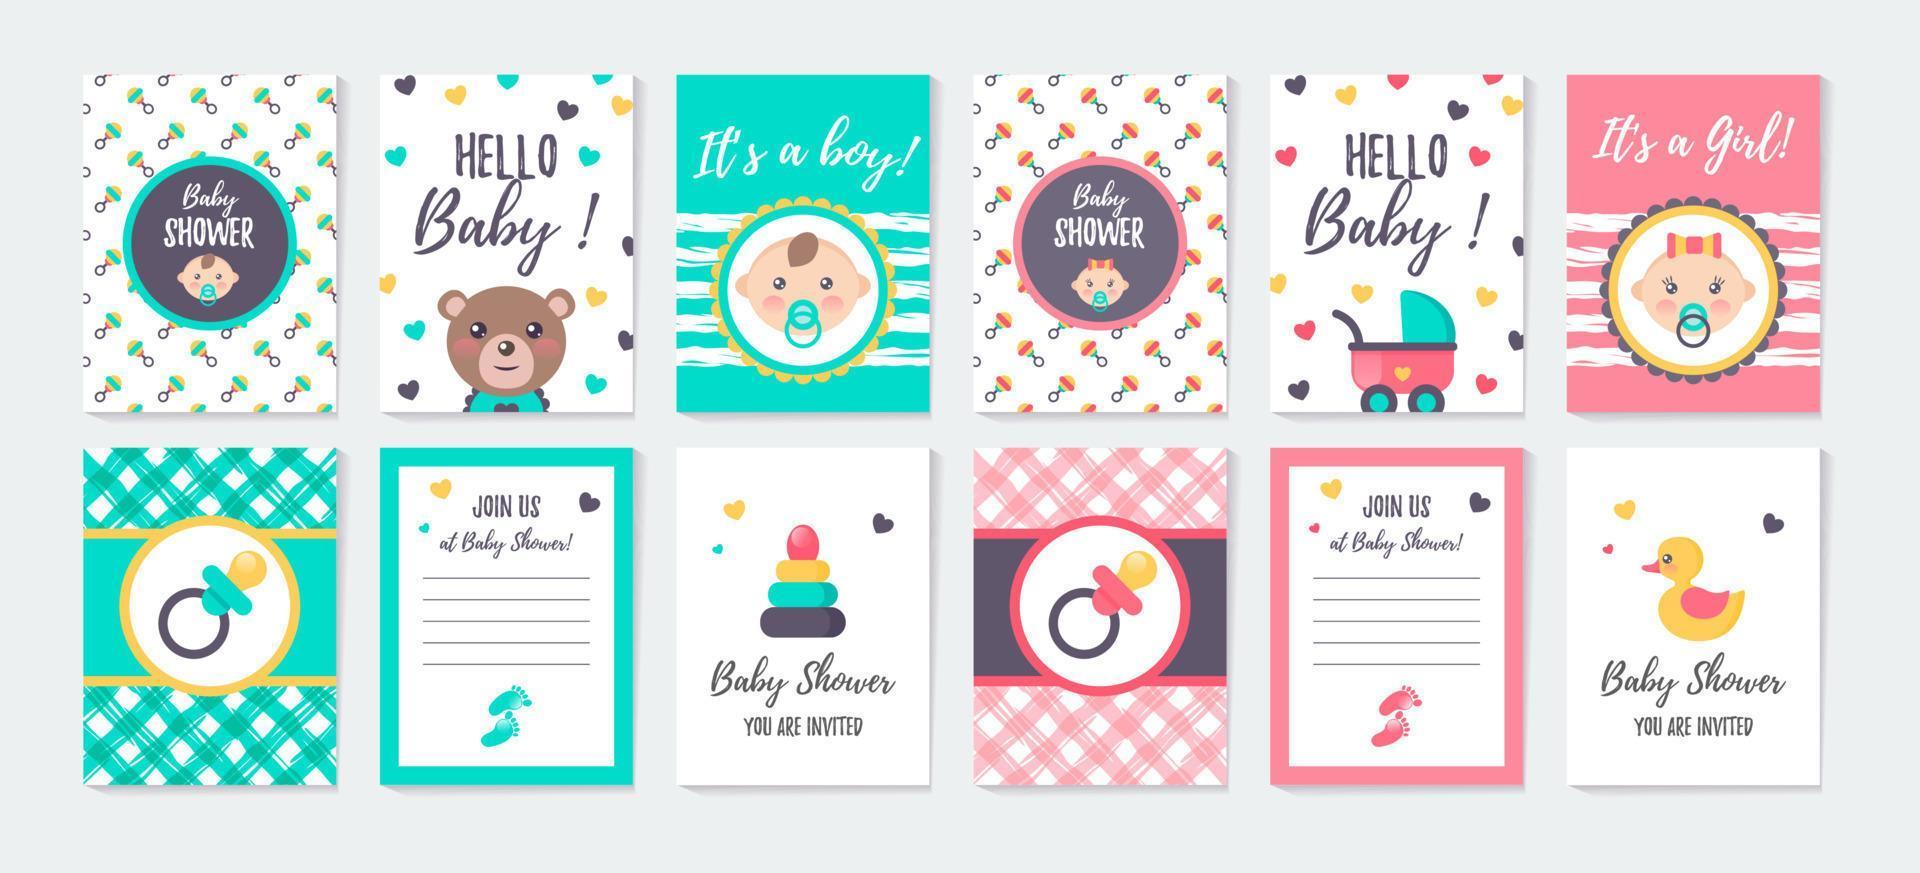 conjunto de cartões verticais e convite para chá de bebê de menina e menino. vetor